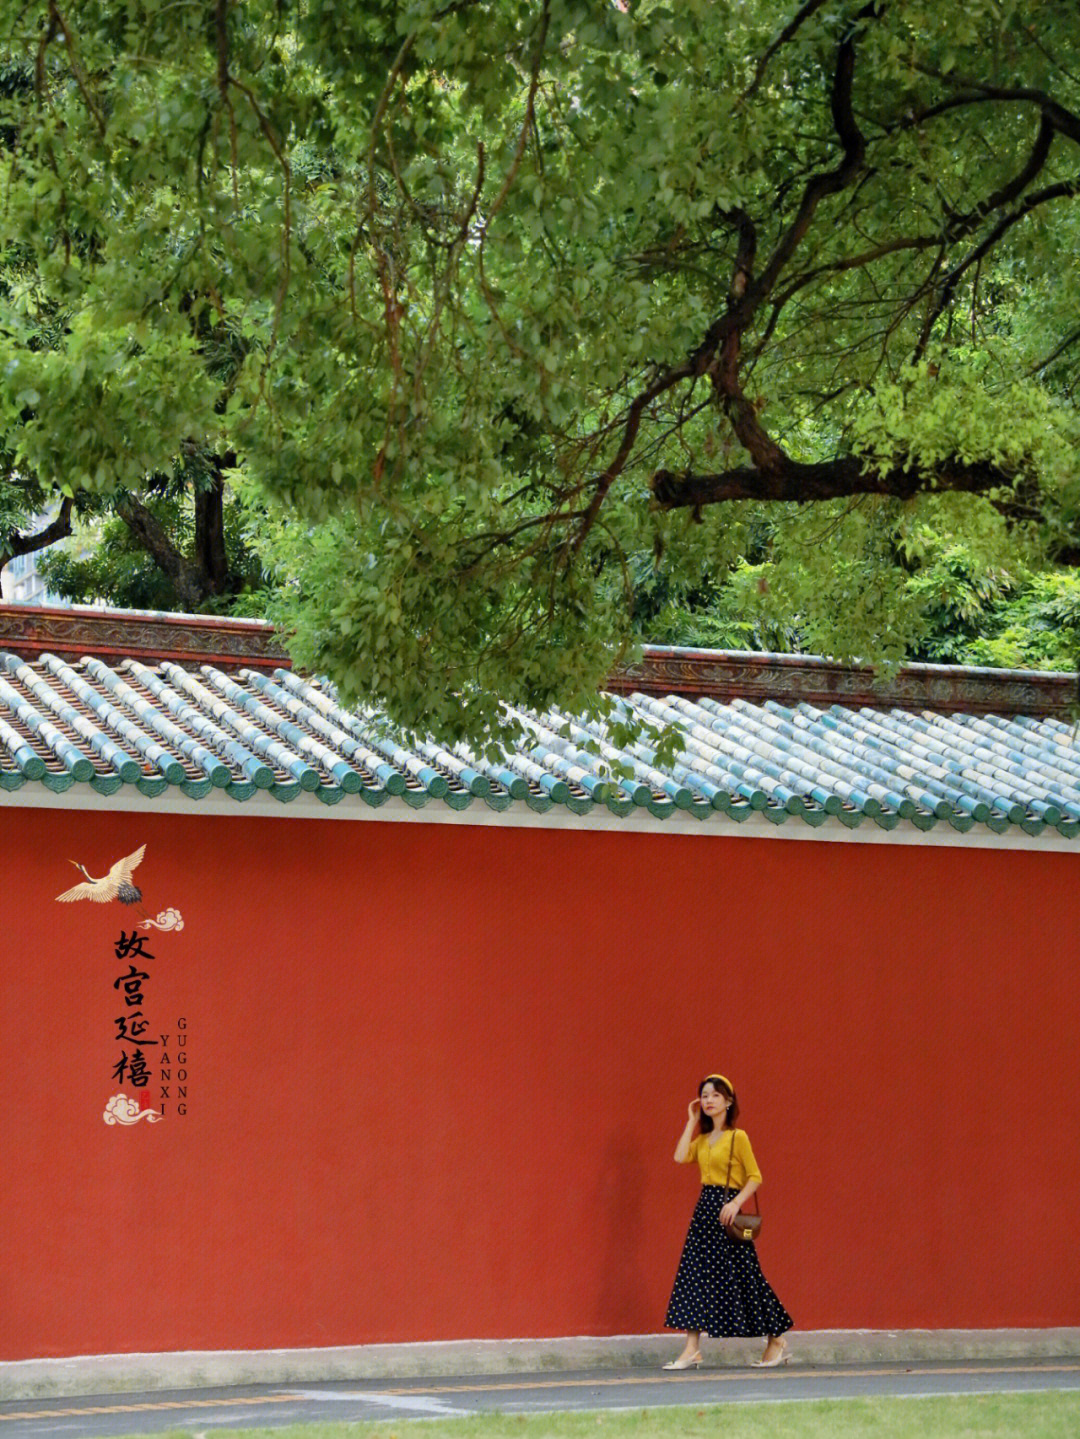 广州拍照拍故宫同款红墙黄瓦